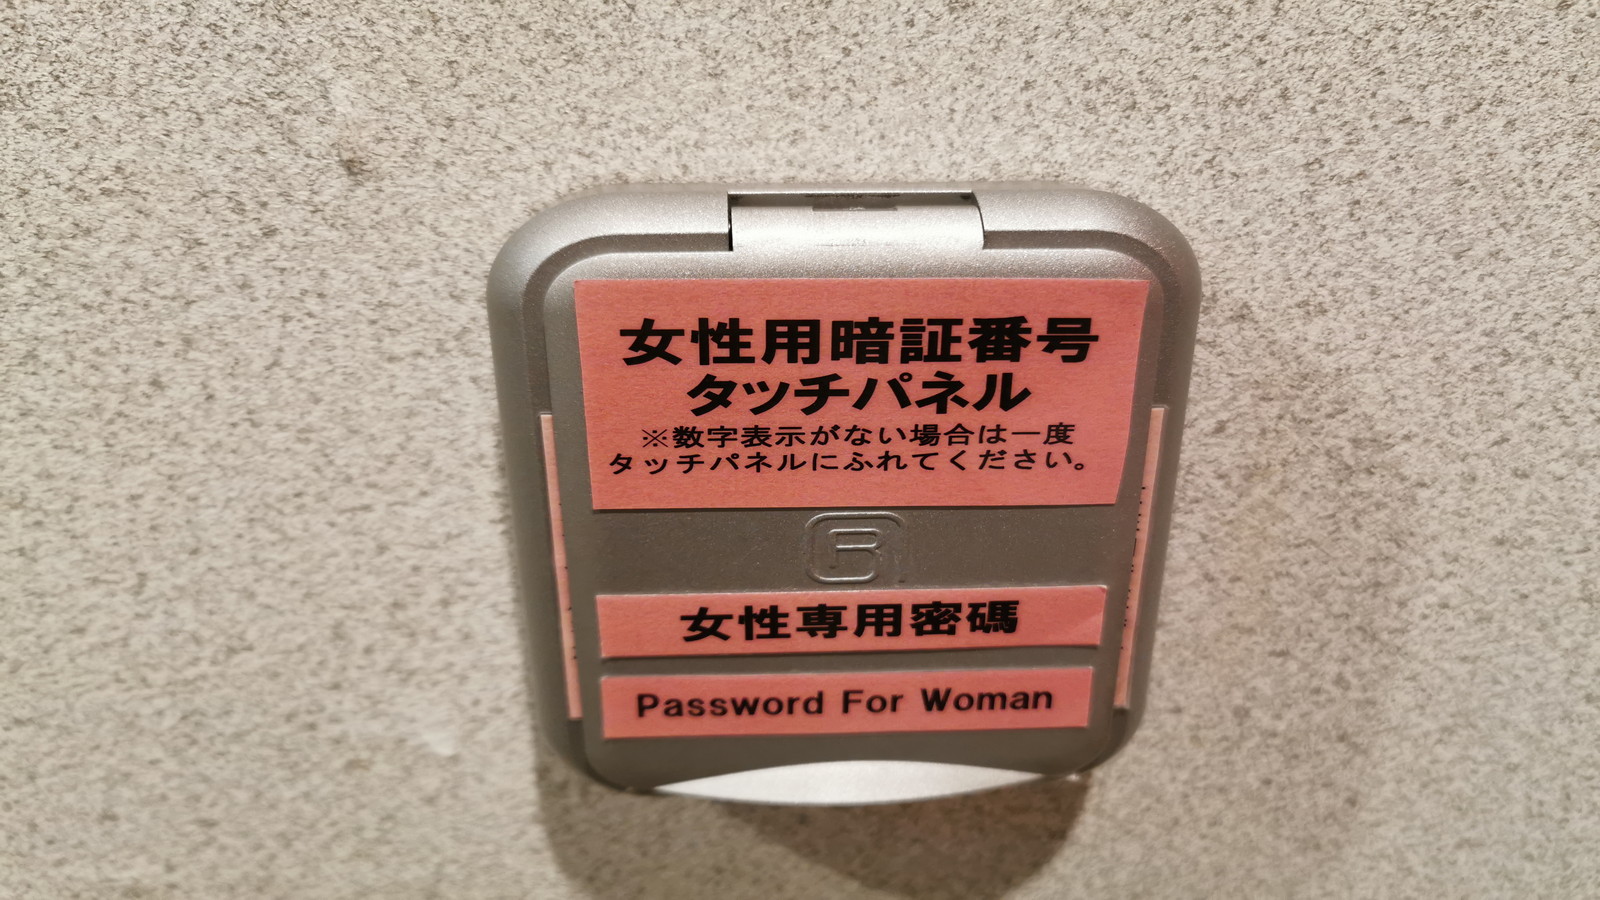 1階女性浴場暗証番号にて開錠